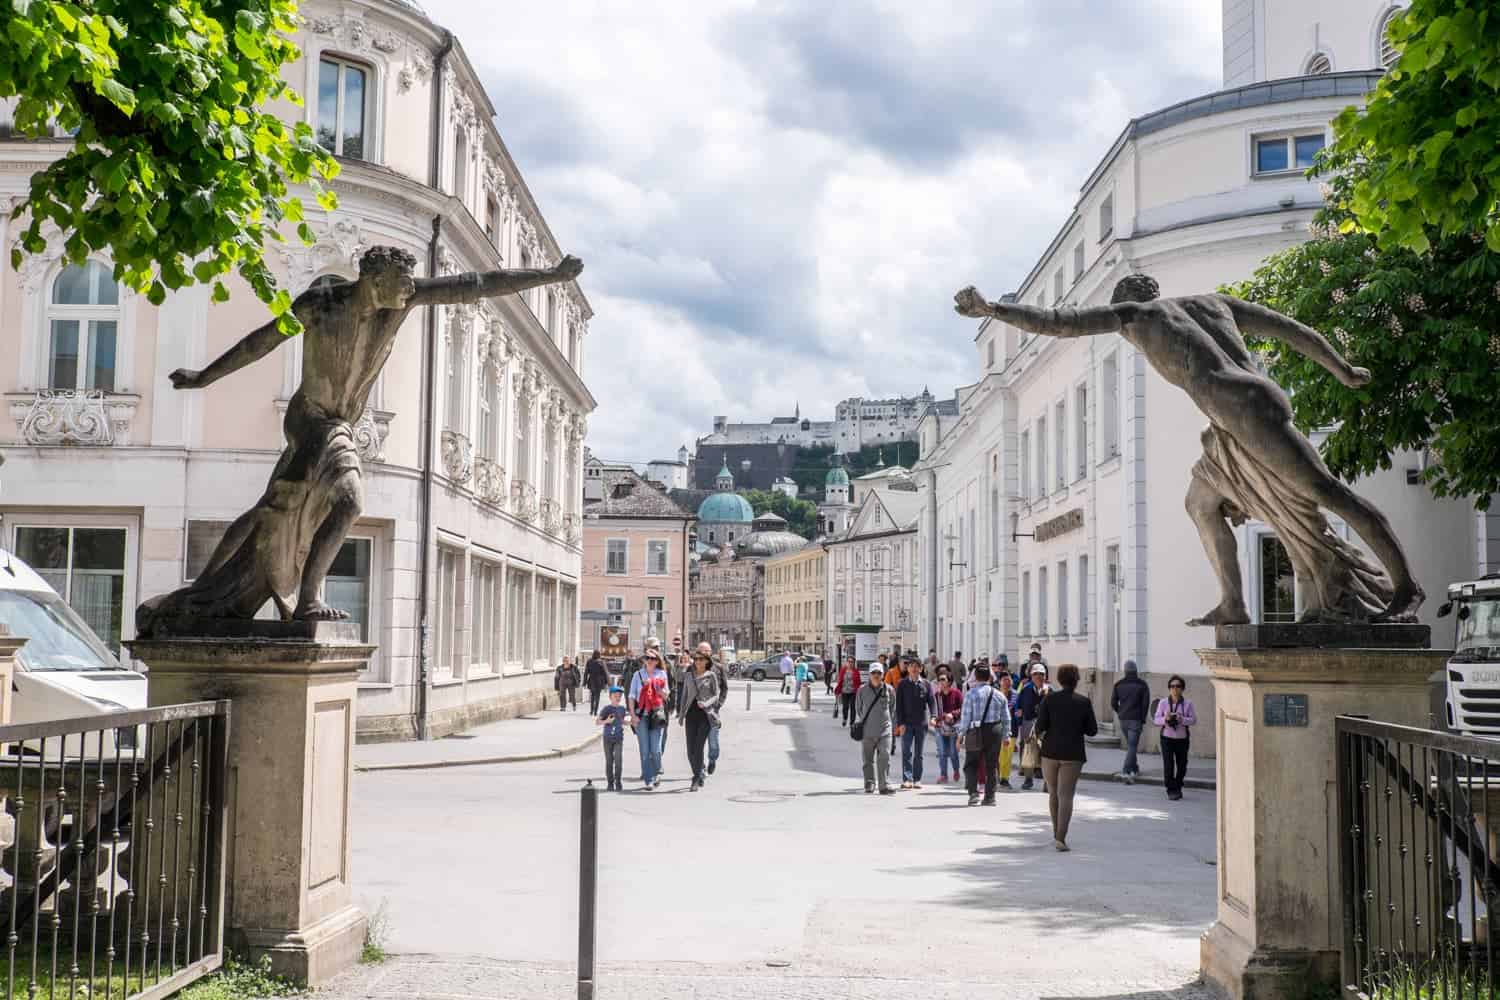 Gate of the Mirabell Gardens in Salzburg, Austria